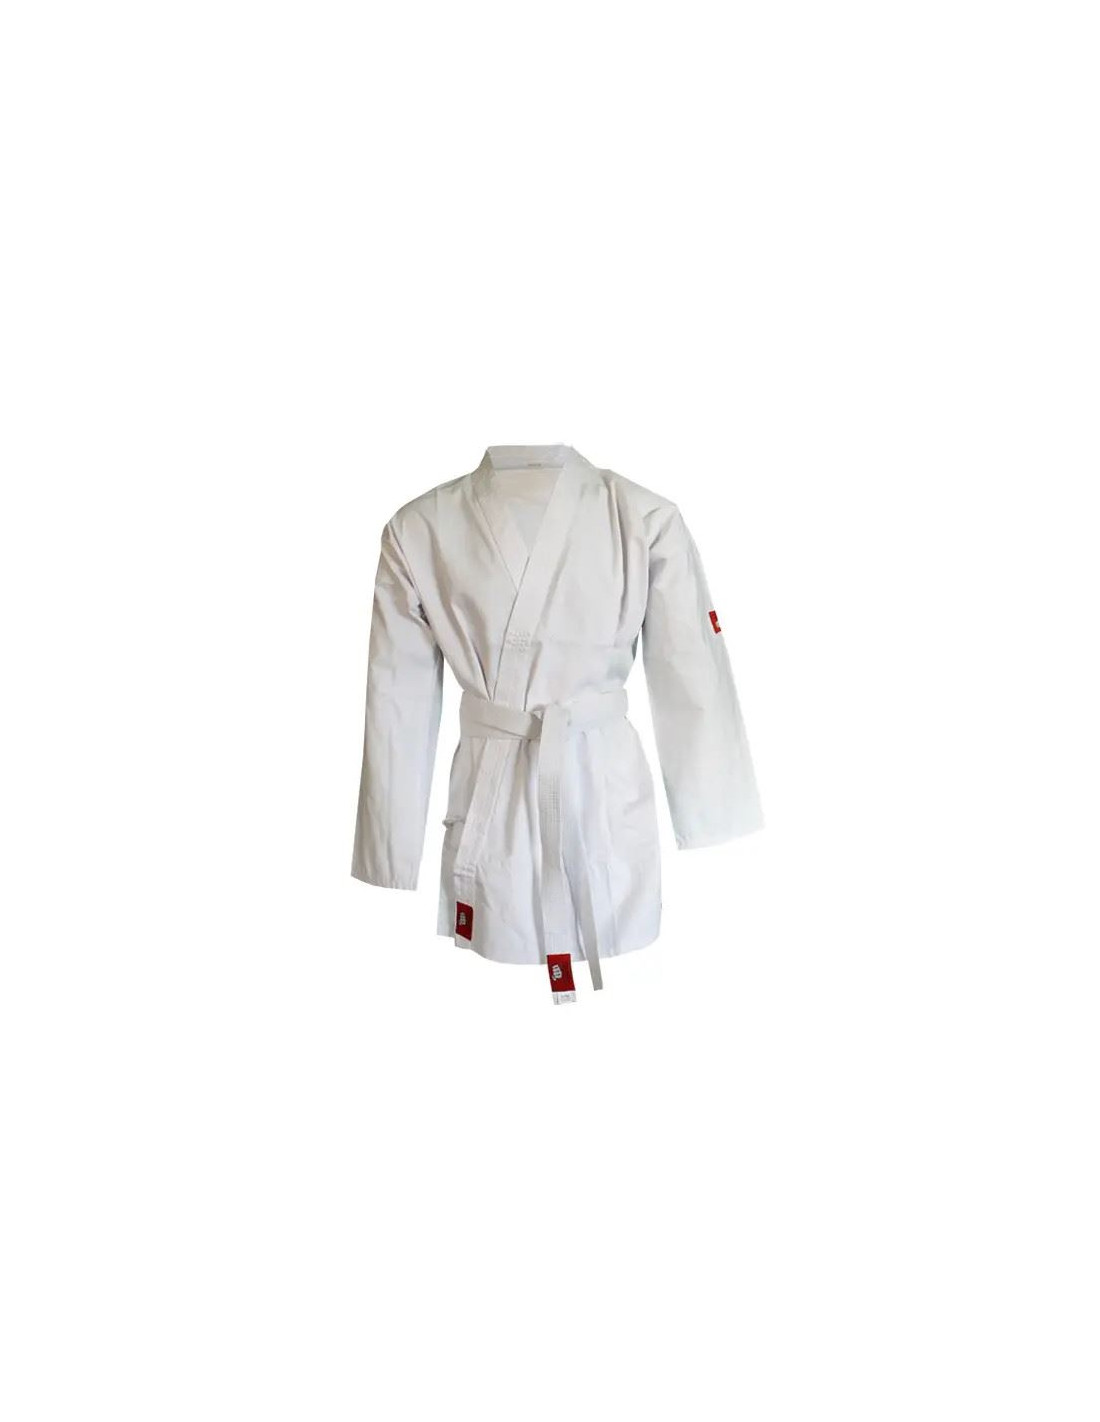 Kimono de karate yoshiro karategui blanco